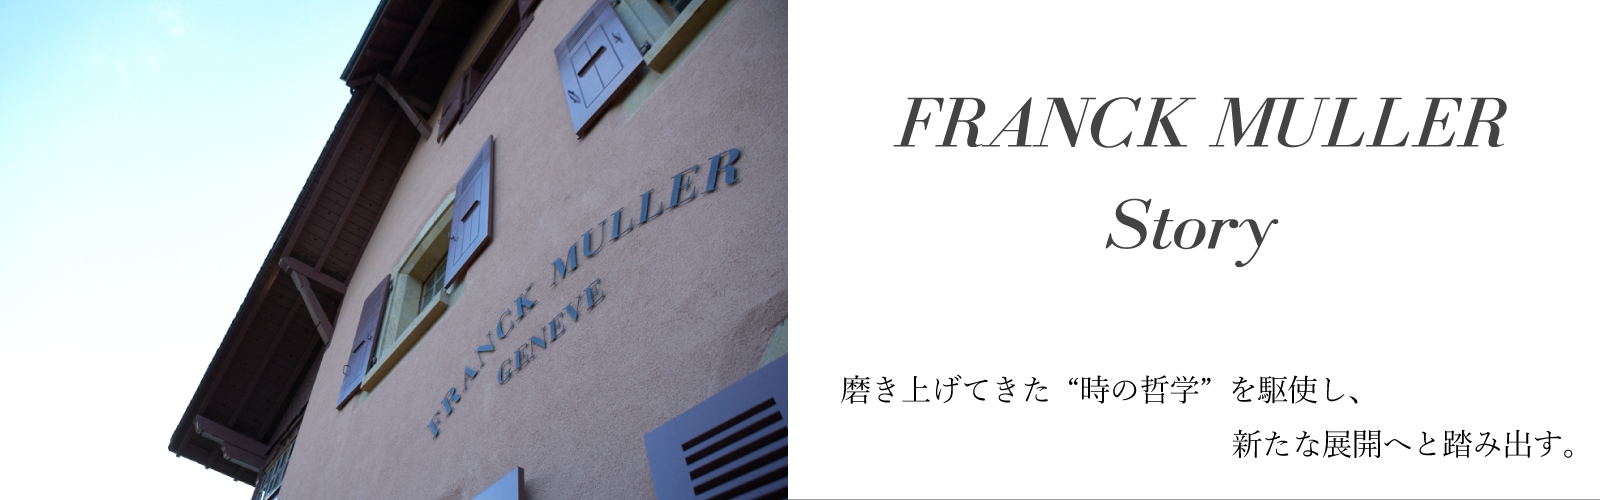 FRANCK MULLER Story